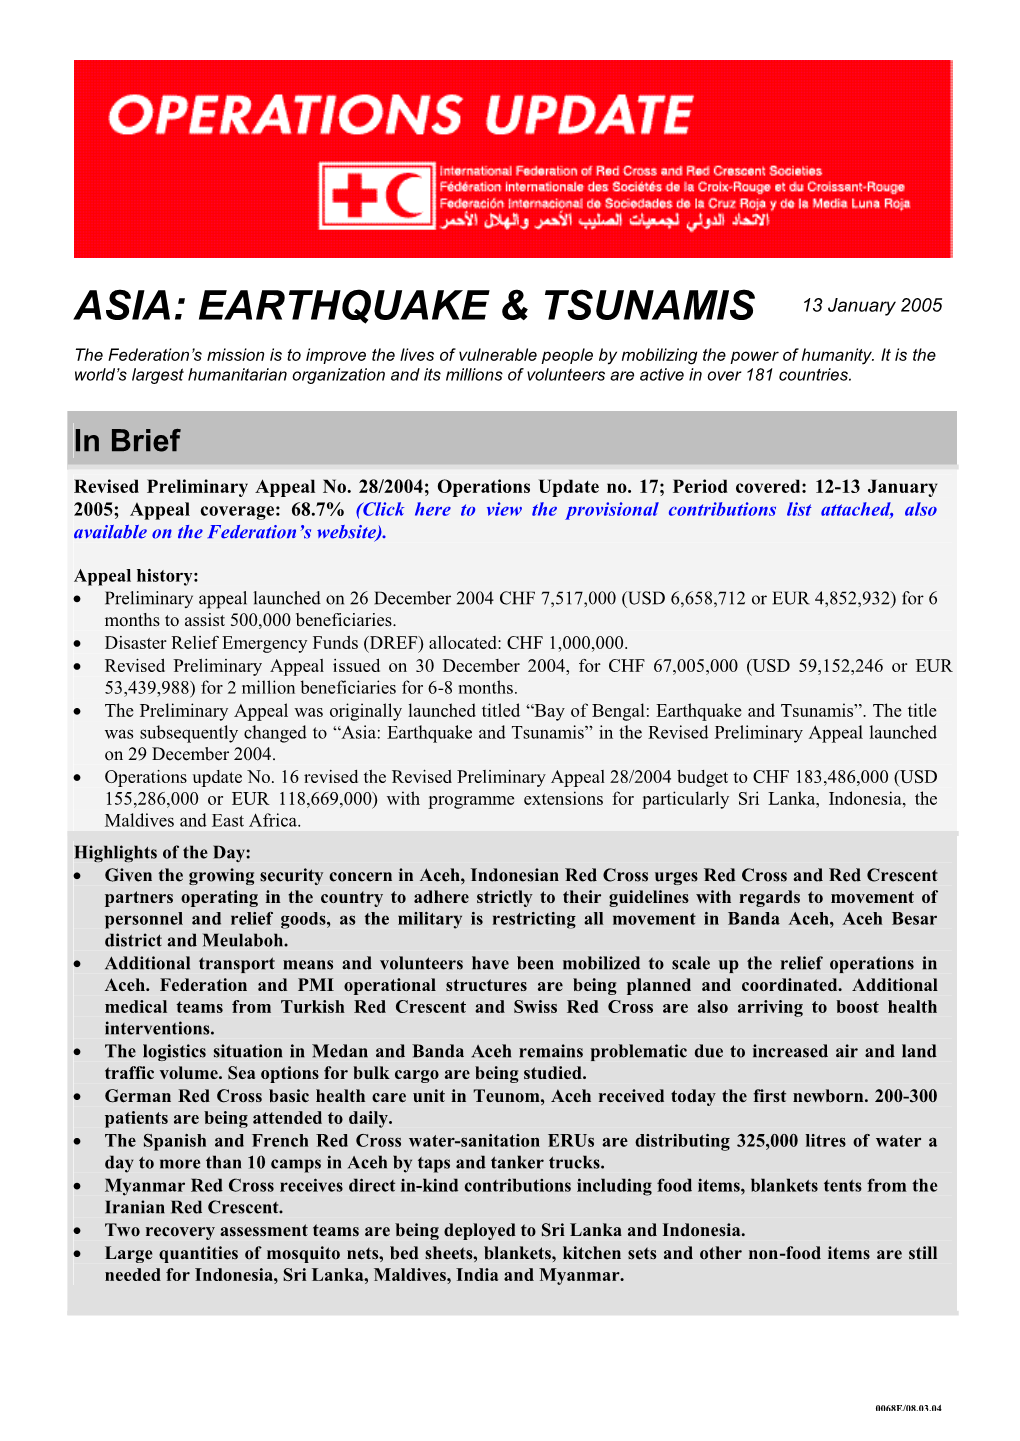 ASIA: EARTHQUAKE & TSUNAMIS 13 January 2005